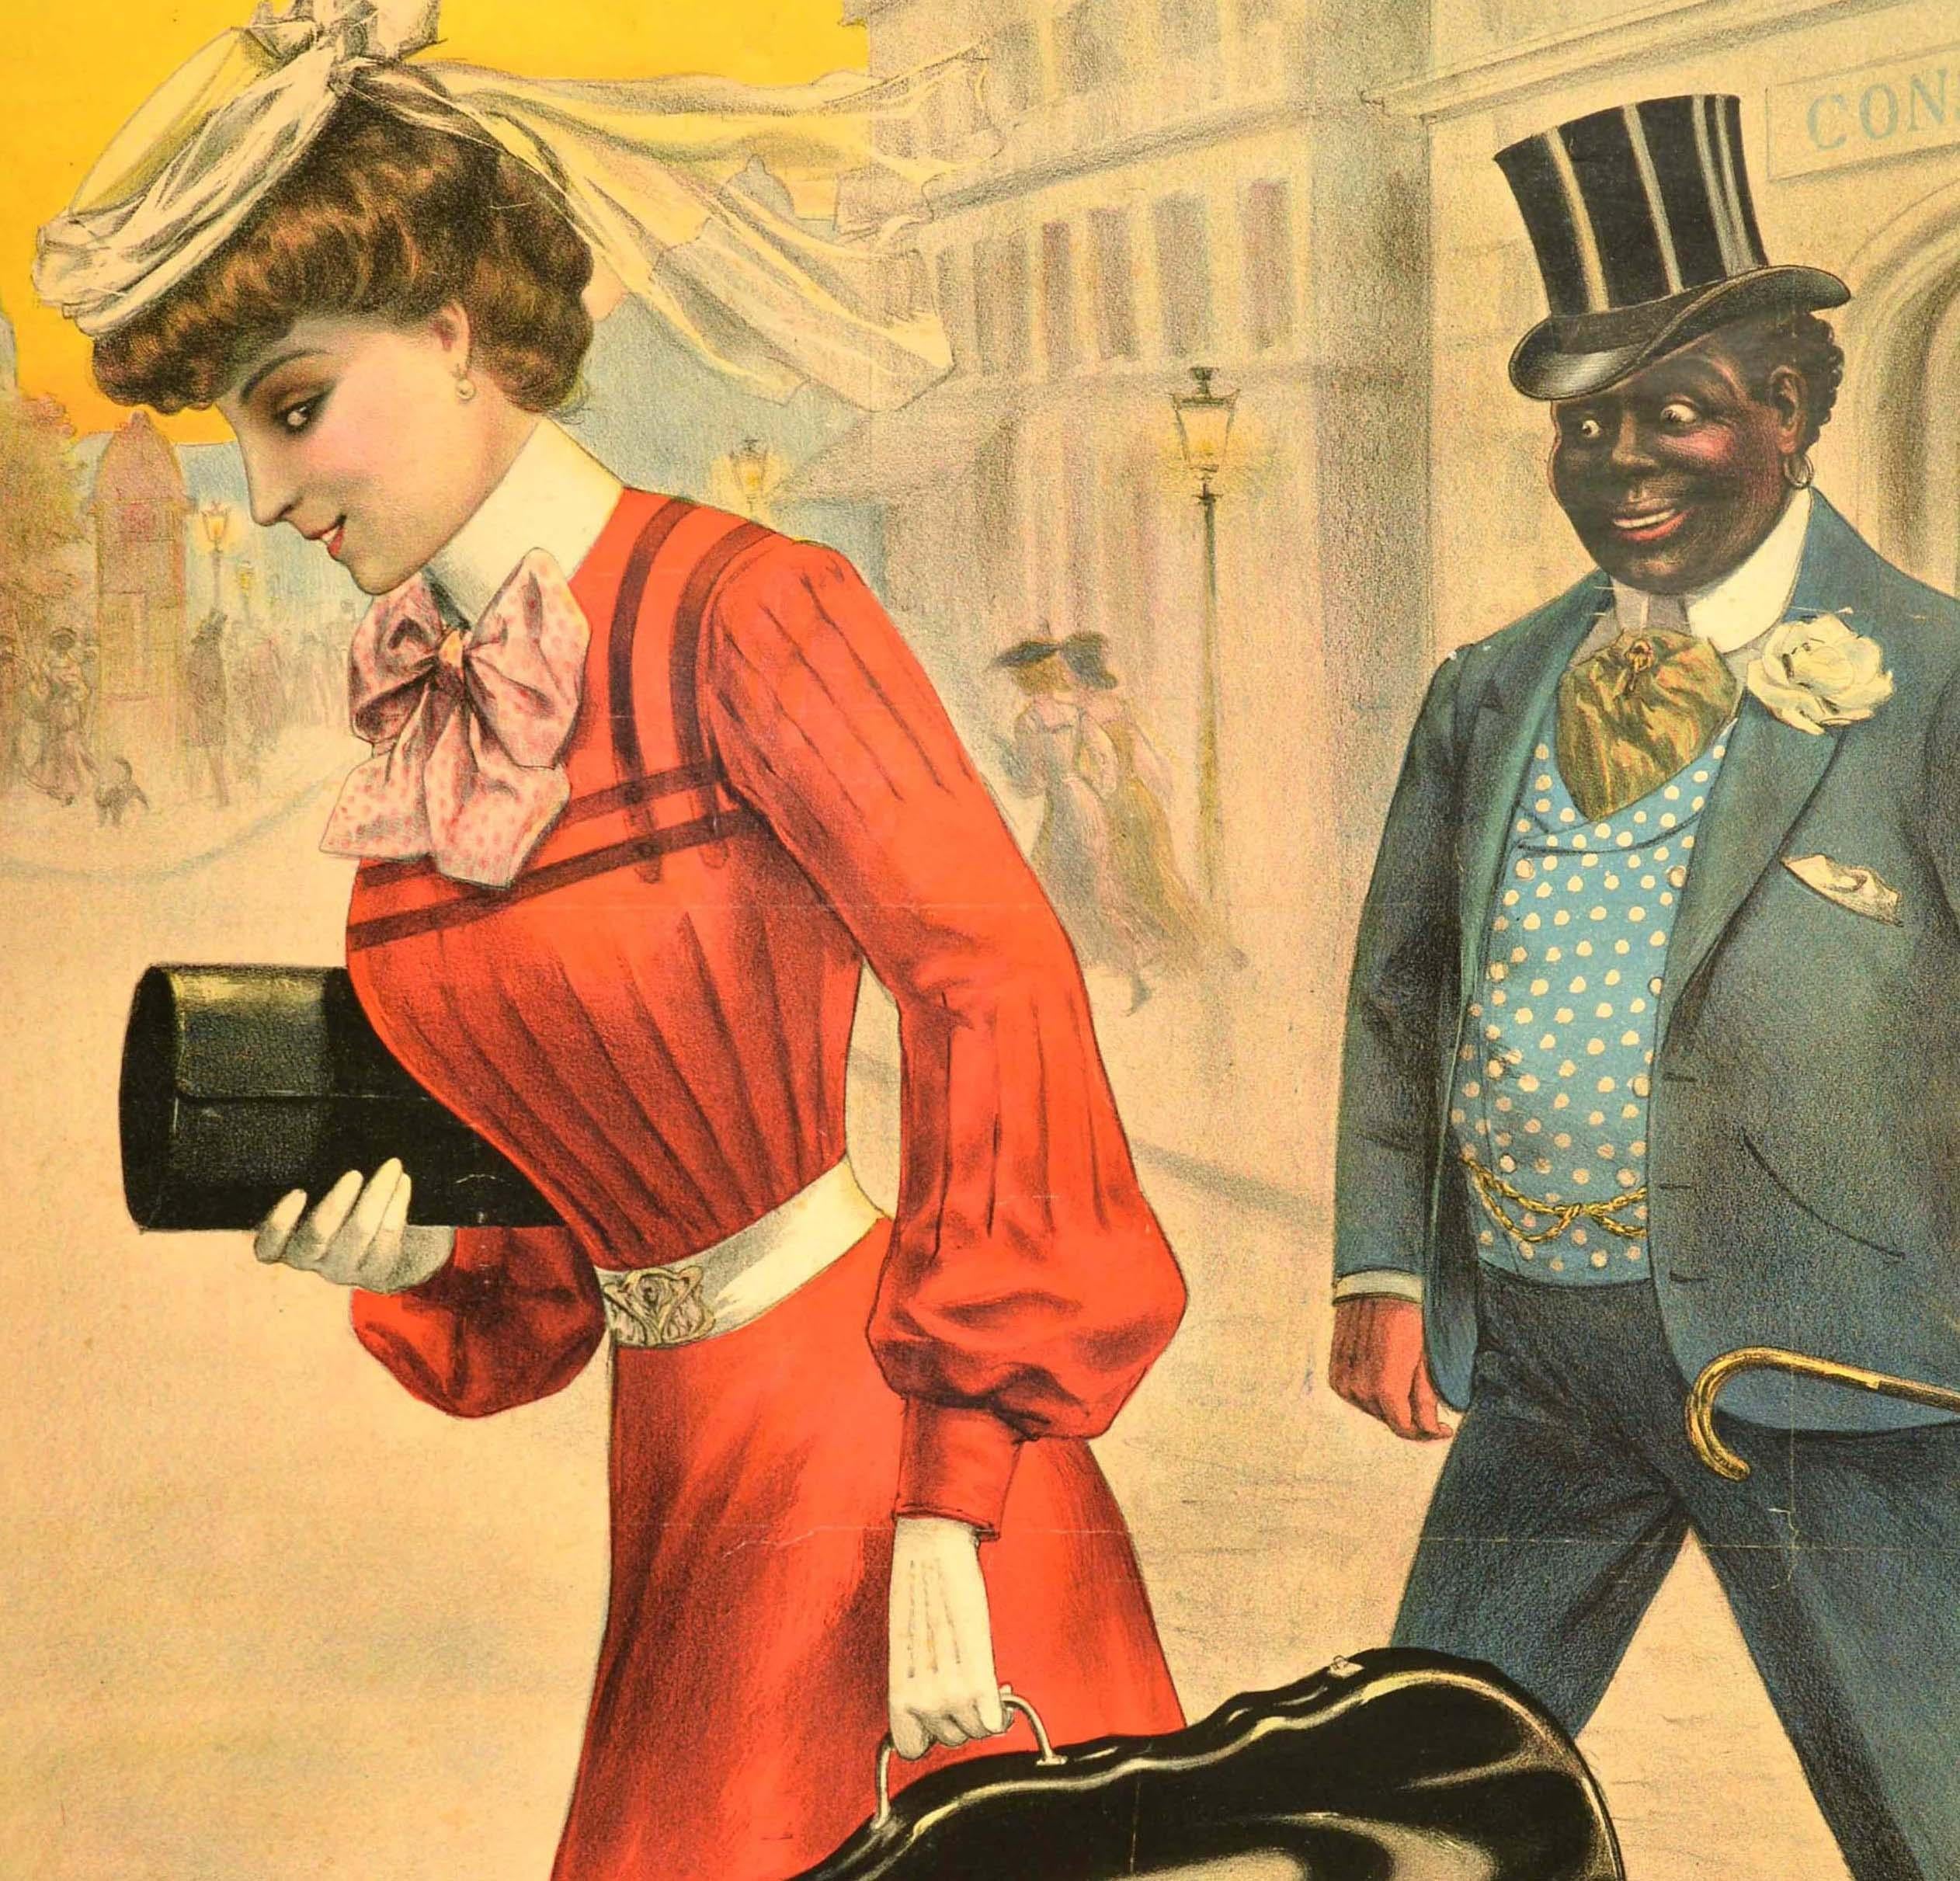 Originales antikes Werbeplakat für ein Theaterstück - The Frisco - mit einem Bild des französischen Künstlers Louis Galice (1864-1935), das eine Dame in einem modischen roten Kleid und weißem Hut zeigt, die in ihrer behandschuhten Hand einen